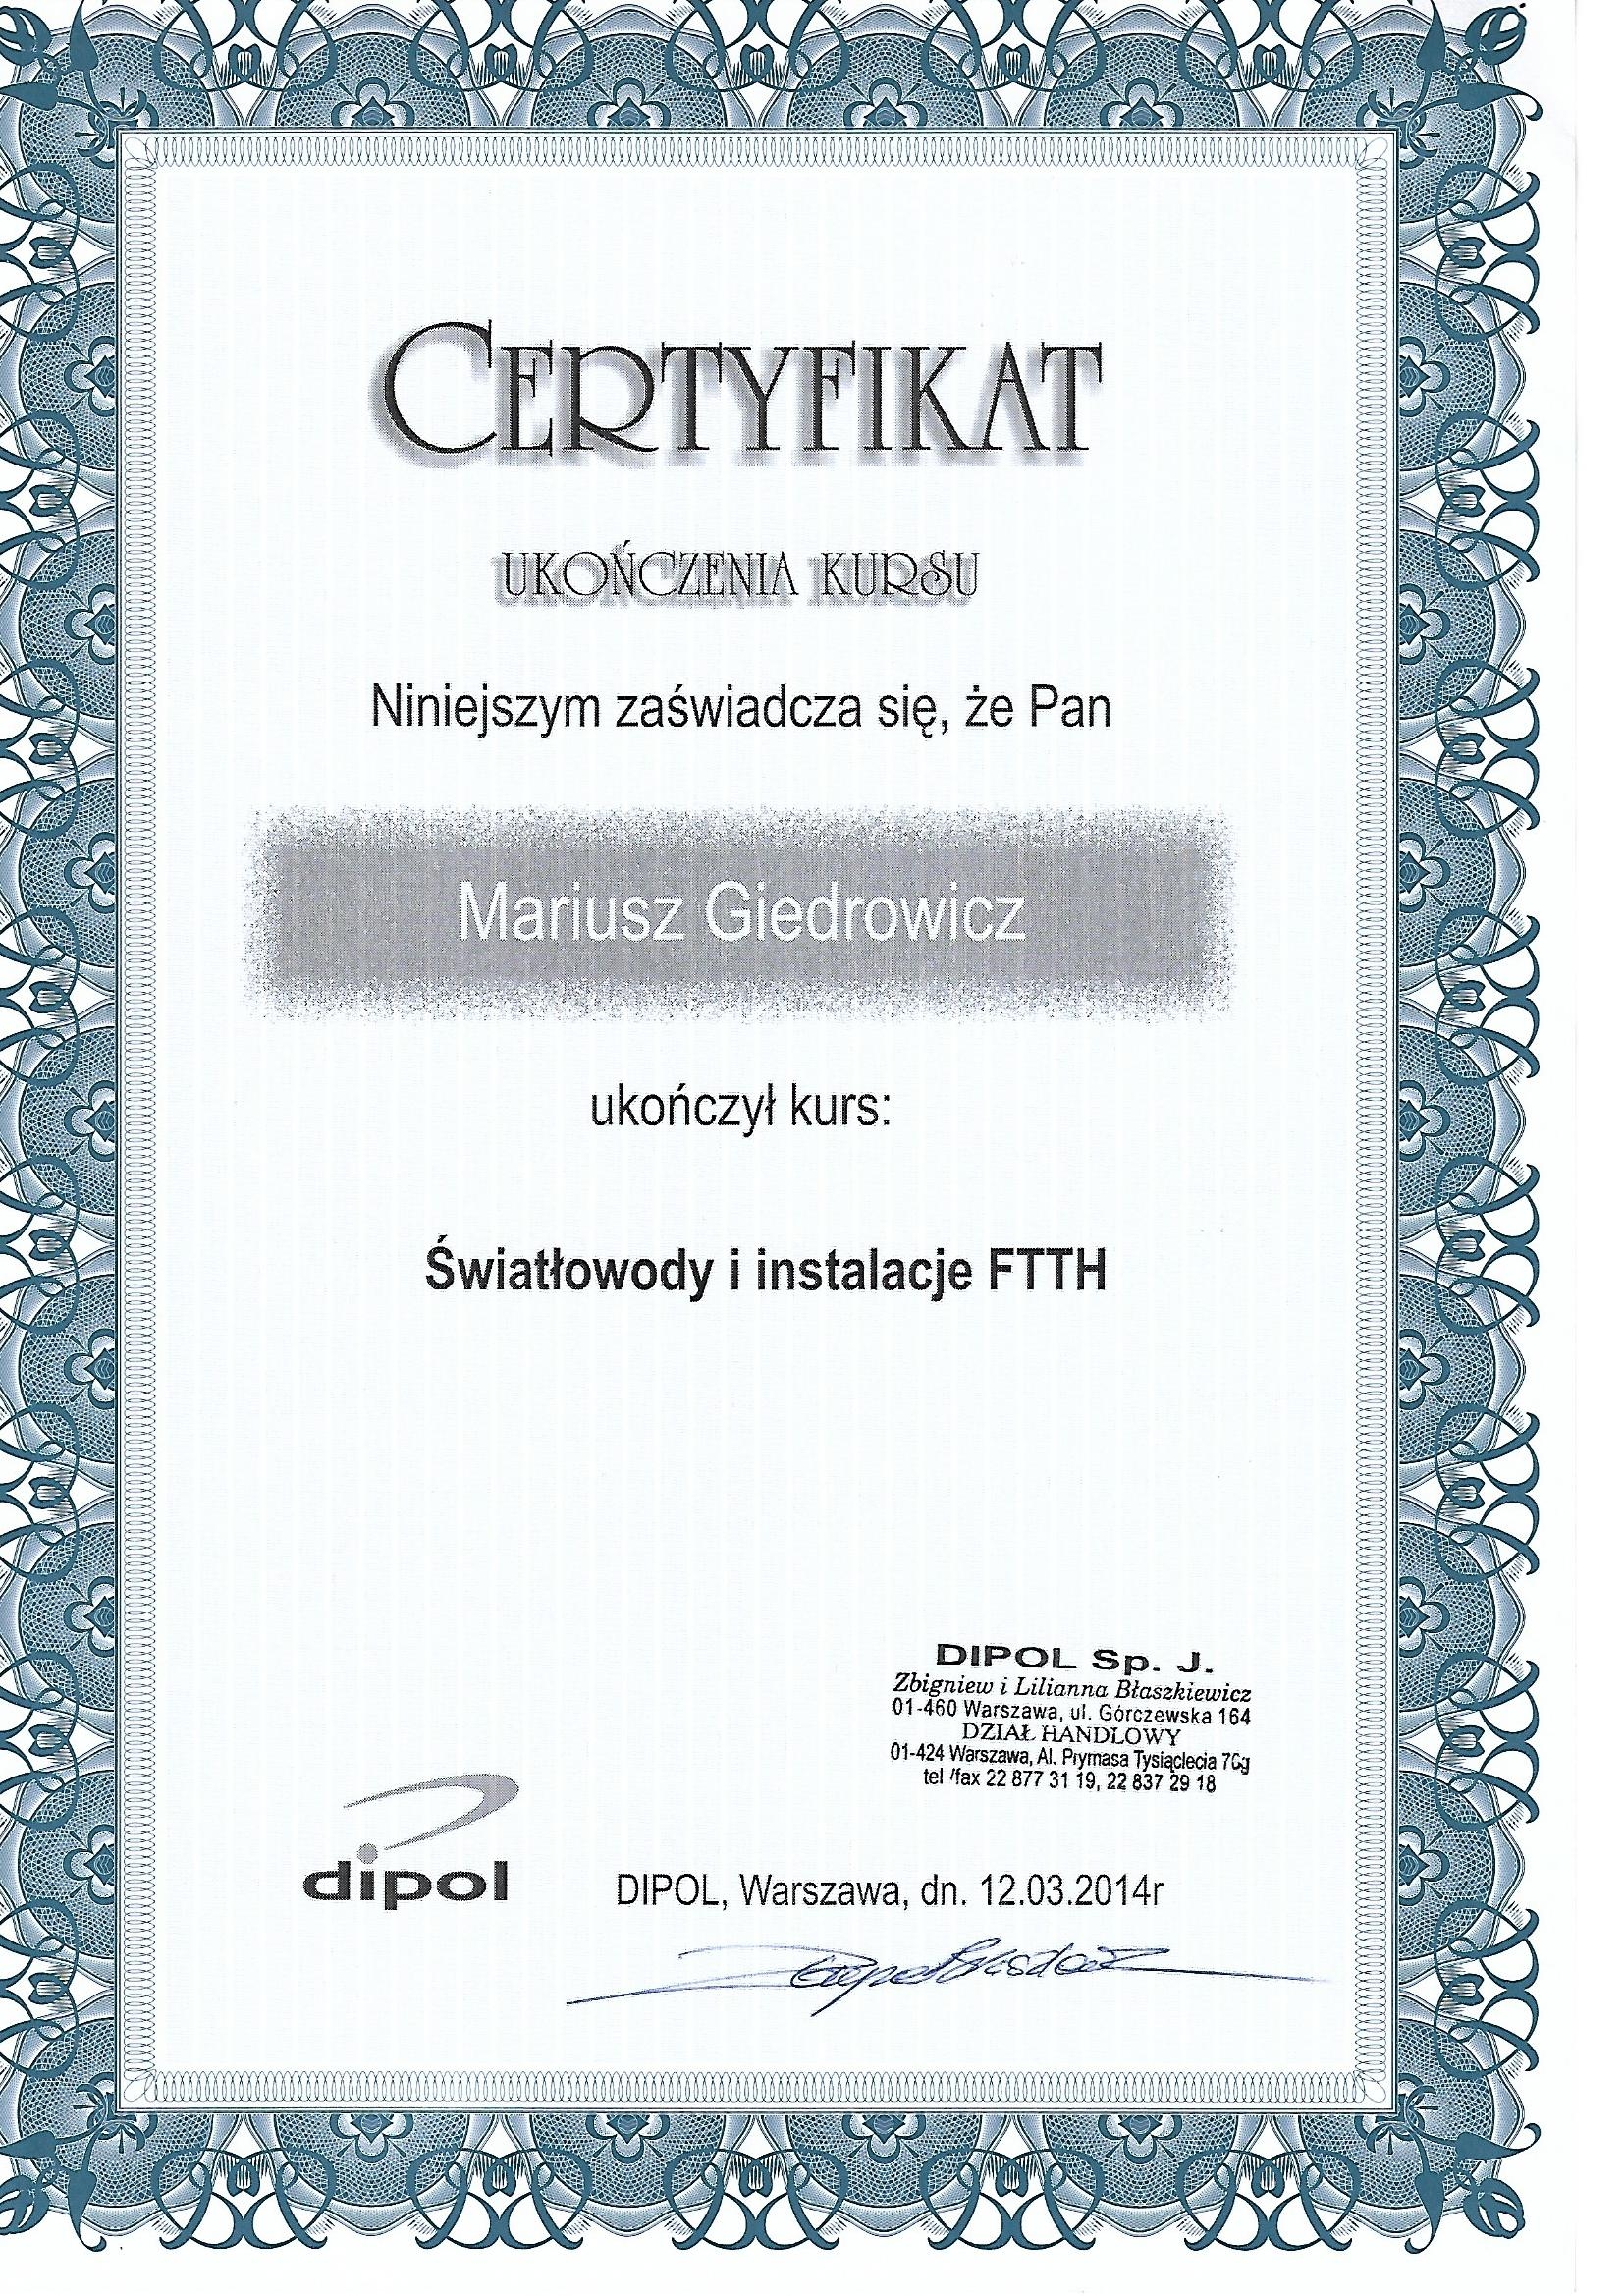 Certyfikat - światłowody i instalacje FTTH